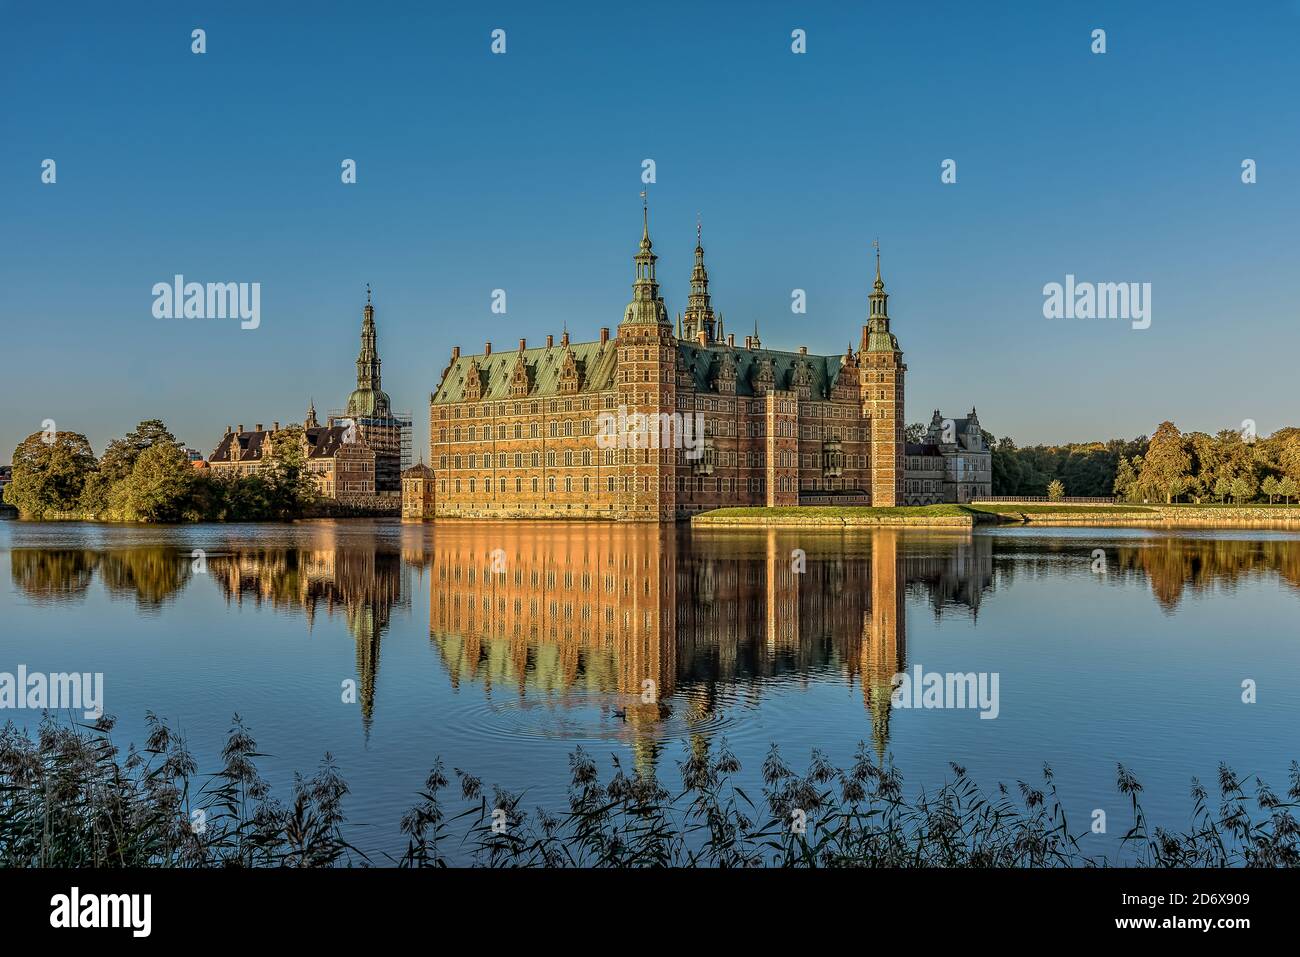 Il castello di Frederiksborg riflette nel lago una mattina senza vento al sole e un gabbiano nuoterà in acqua, Hillerød, Danimarca, 17 ottobre 2020 Foto Stock